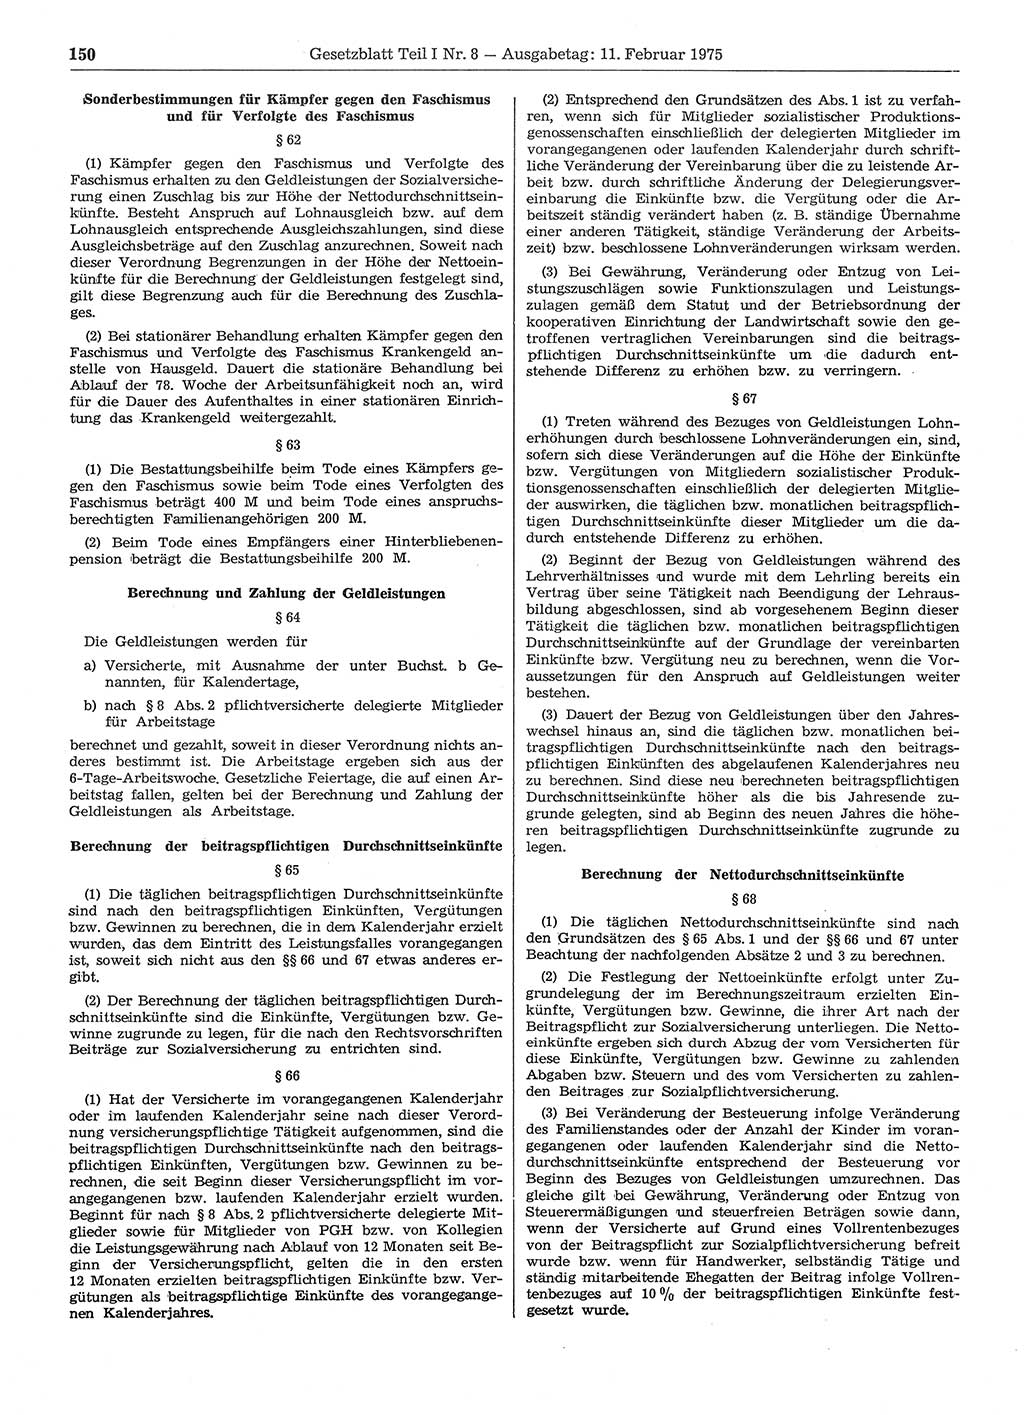 Gesetzblatt (GBl.) der Deutschen Demokratischen Republik (DDR) Teil Ⅰ 1975, Seite 150 (GBl. DDR Ⅰ 1975, S. 150)